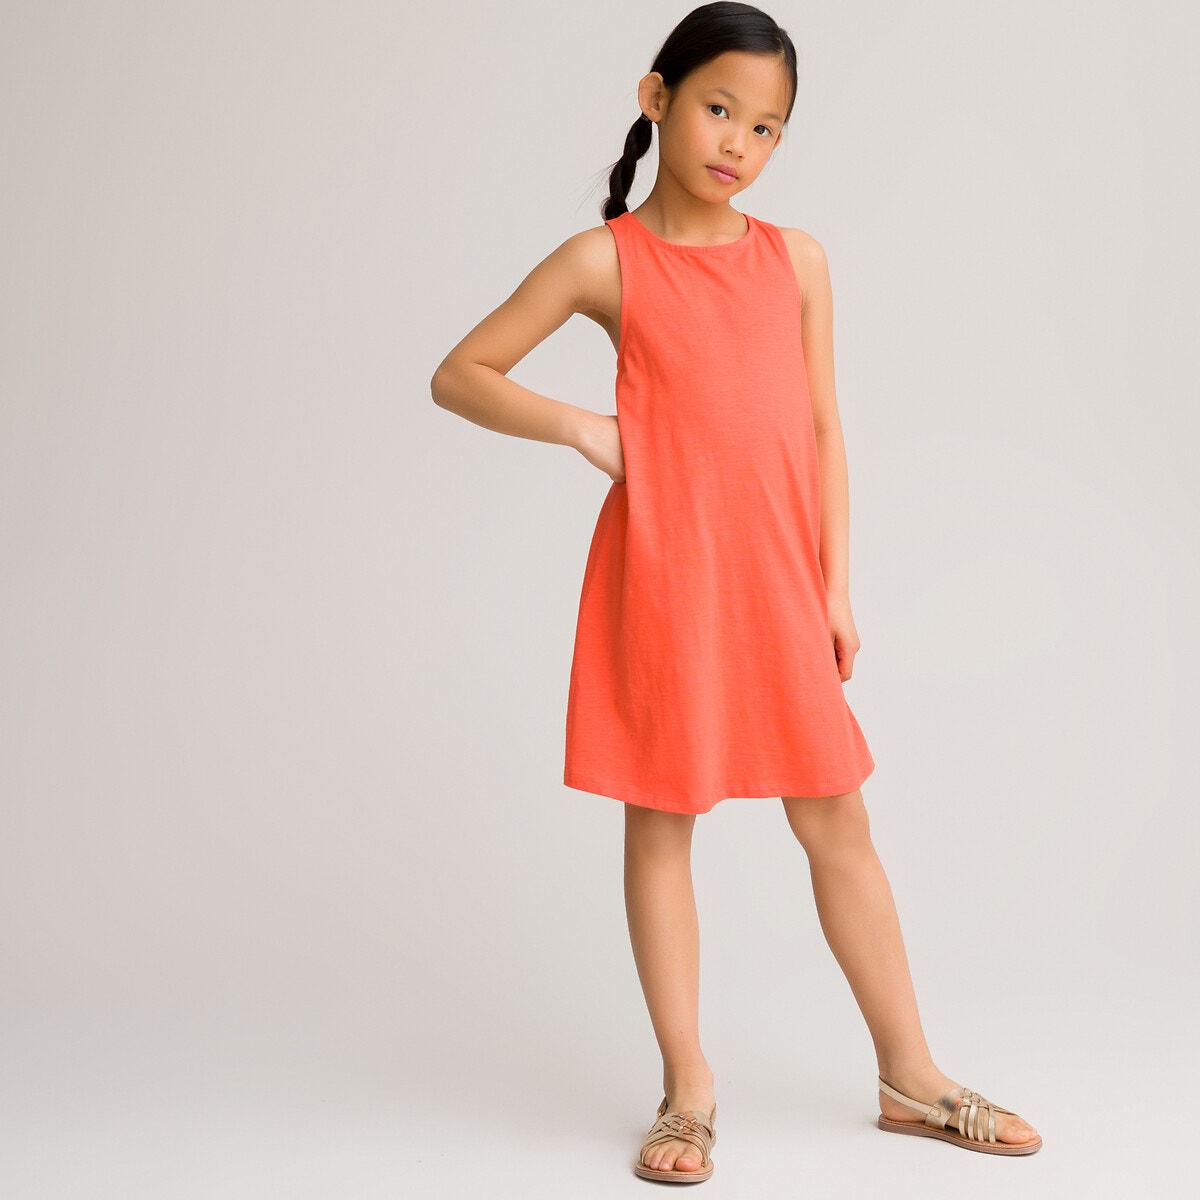 ΠΑΙΔΙ | Φορέματα | Αμάνικα Αμάνικο φόρεμα από βιολογικό βαμβάκι, 3-12 ετών